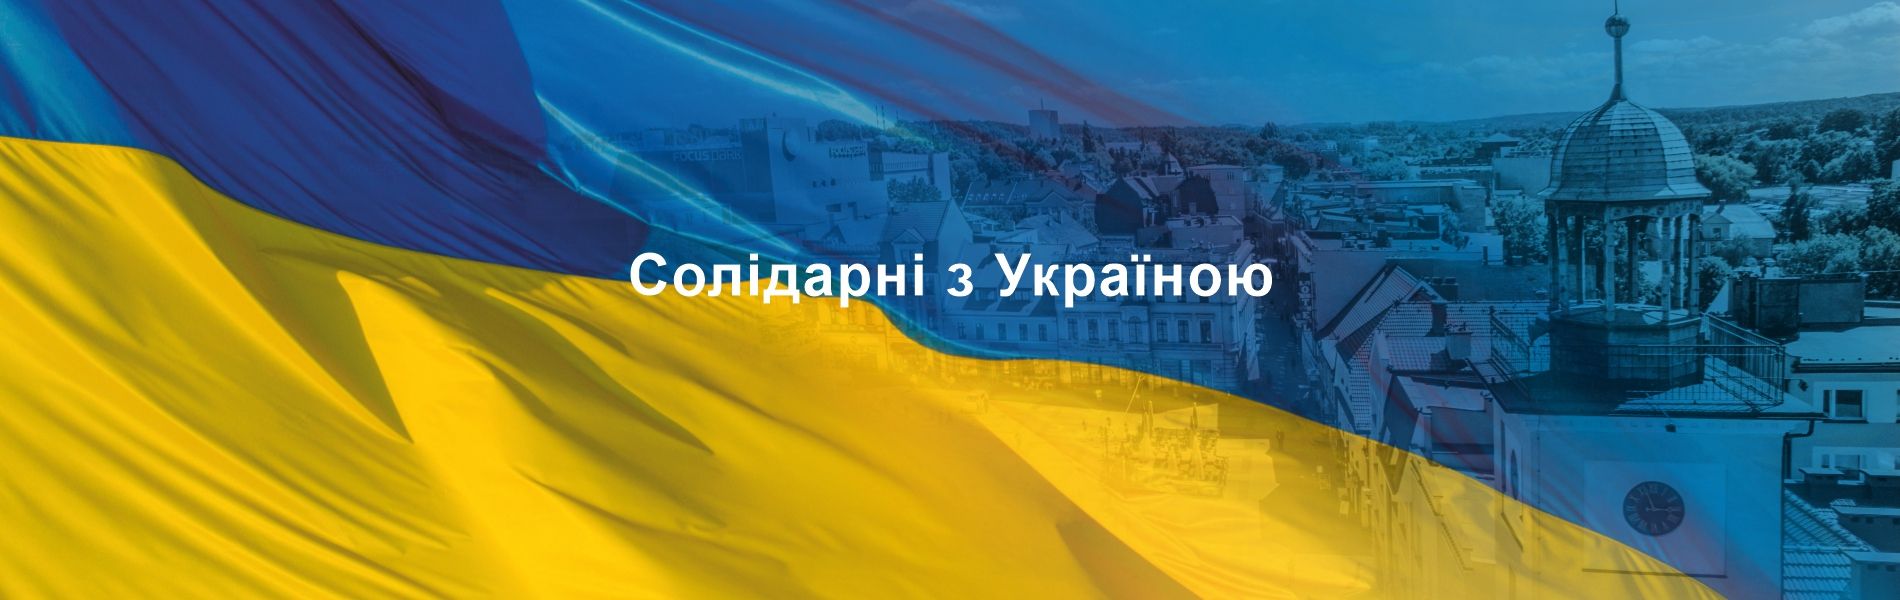 Niebiesko-żółta grafika stylizowana na flagę Ukrainy z napisem solidarni z Ukrainą po urkaińsku